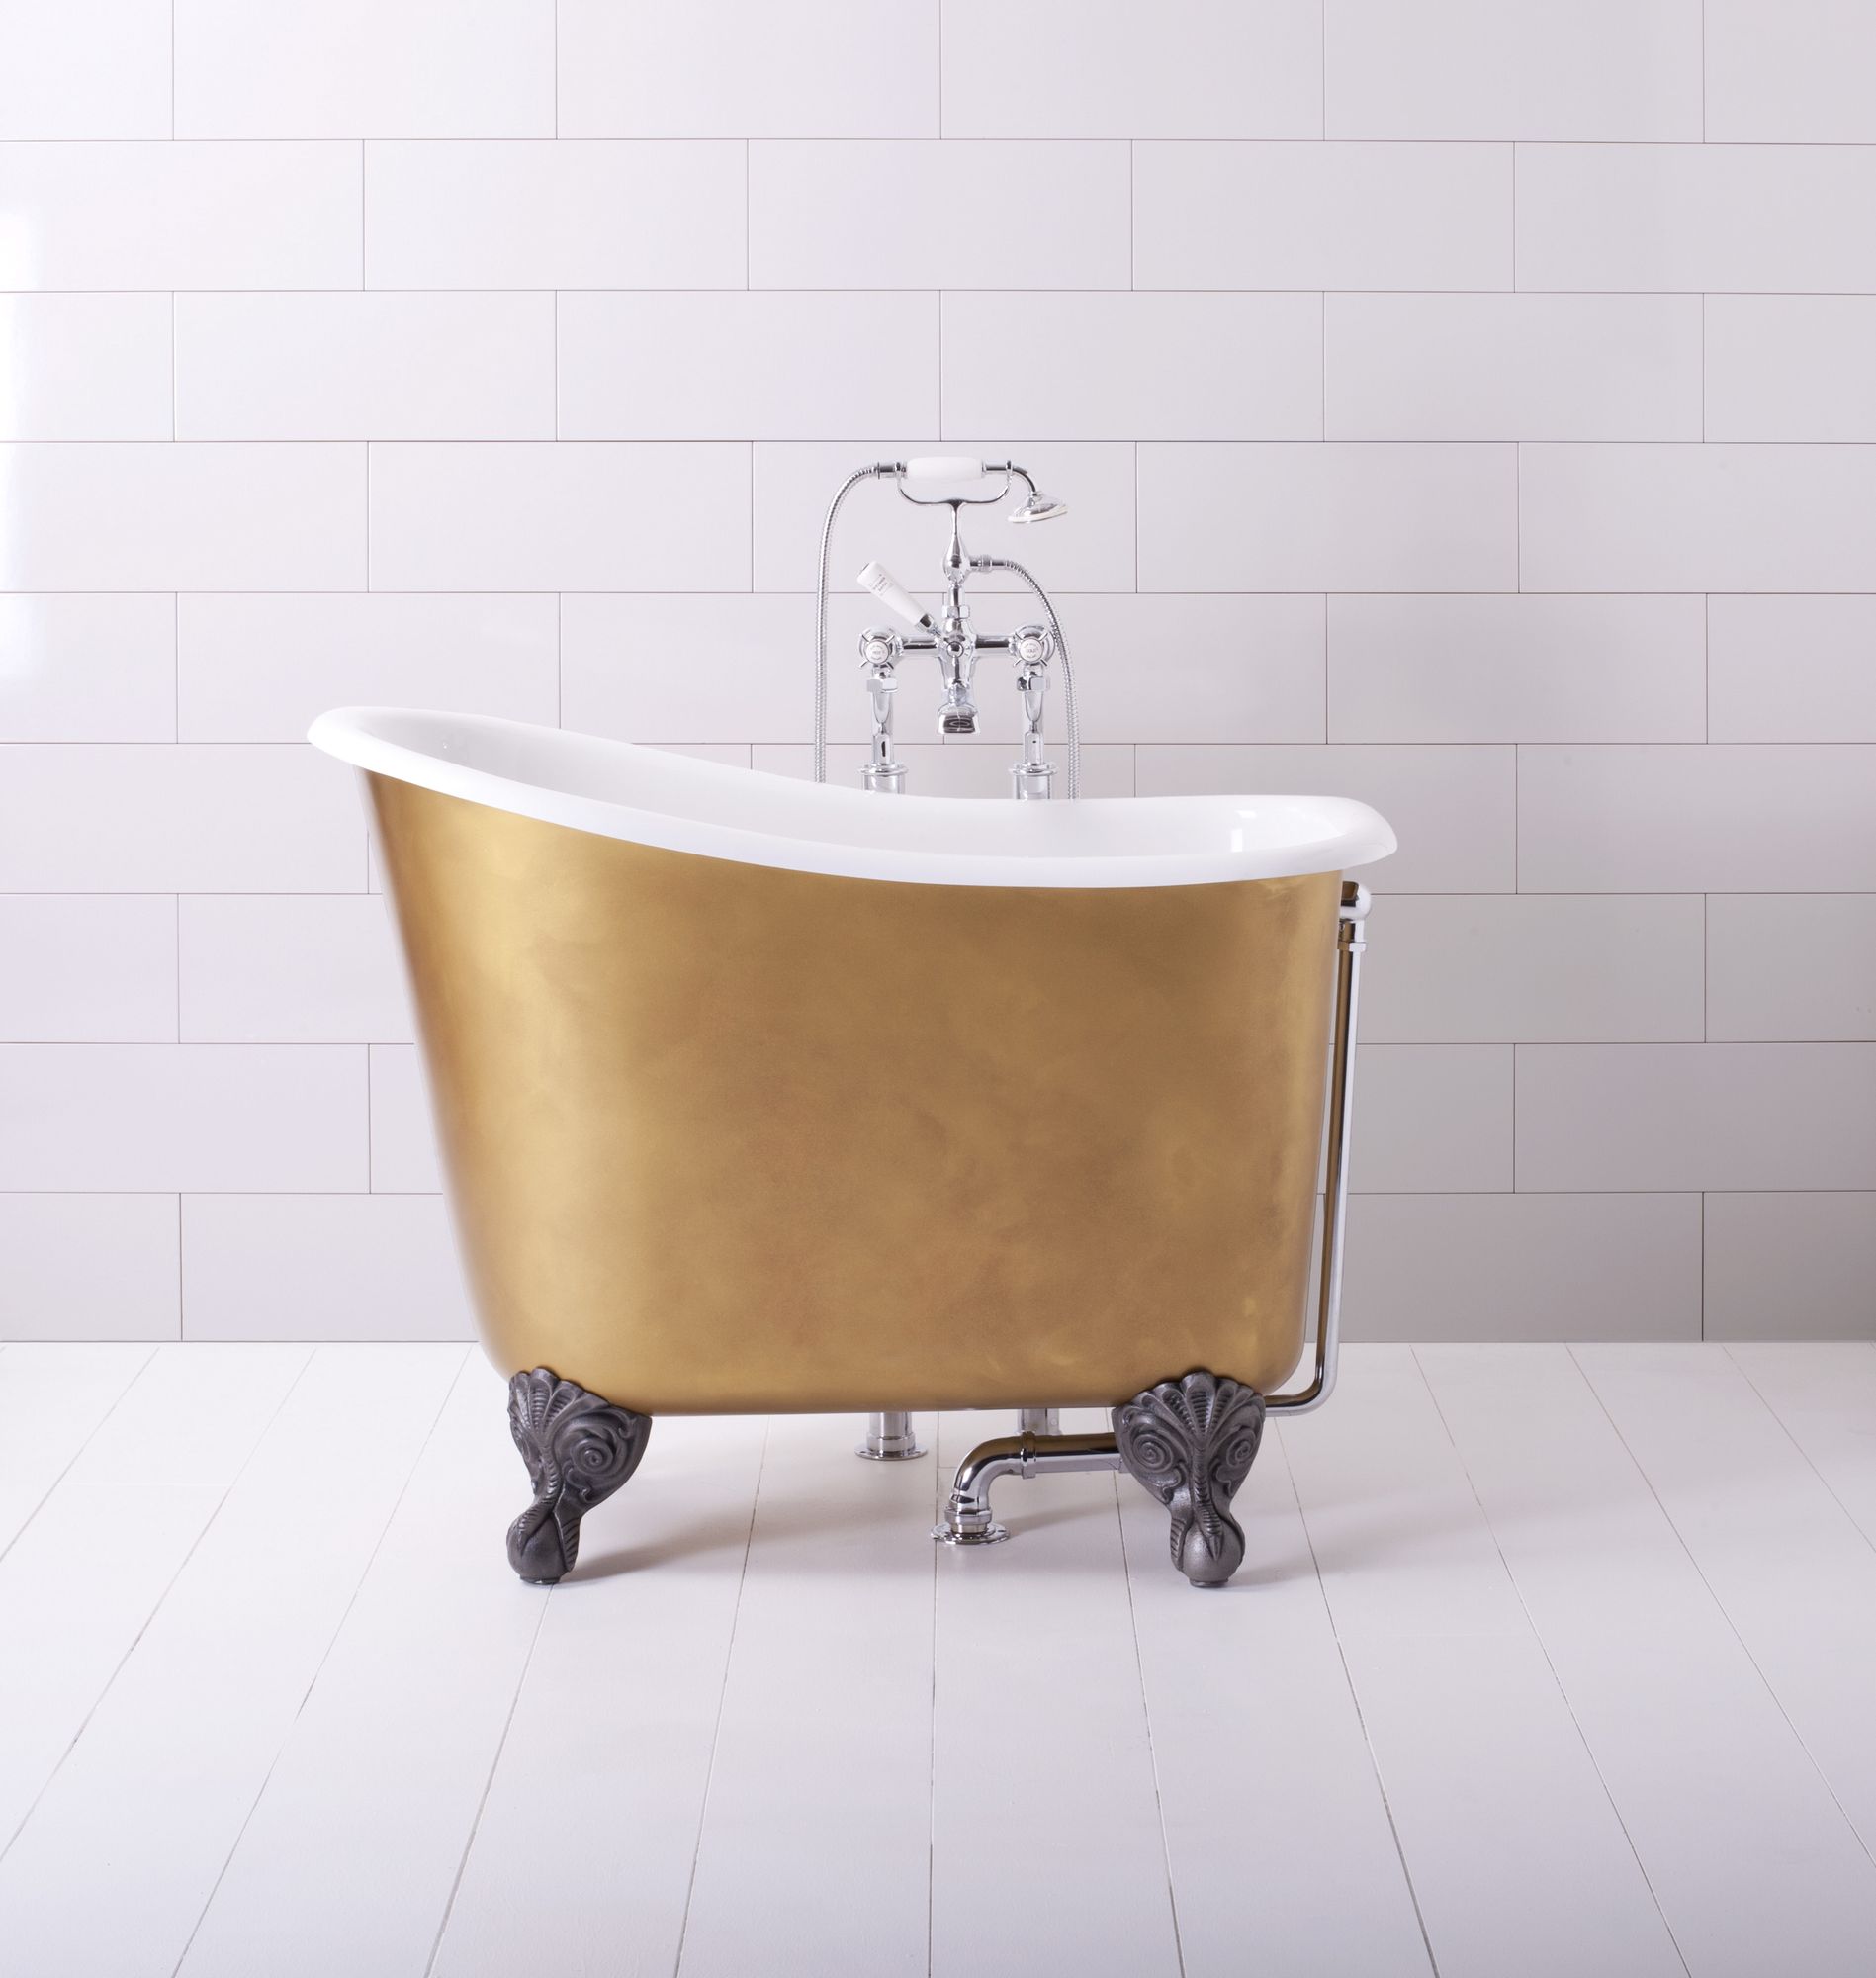 TUBBY TUB Traditional Bathrooms узкая и высокая ванная в классическом стиле на лапах из минерального литья (ALB.20.CP)